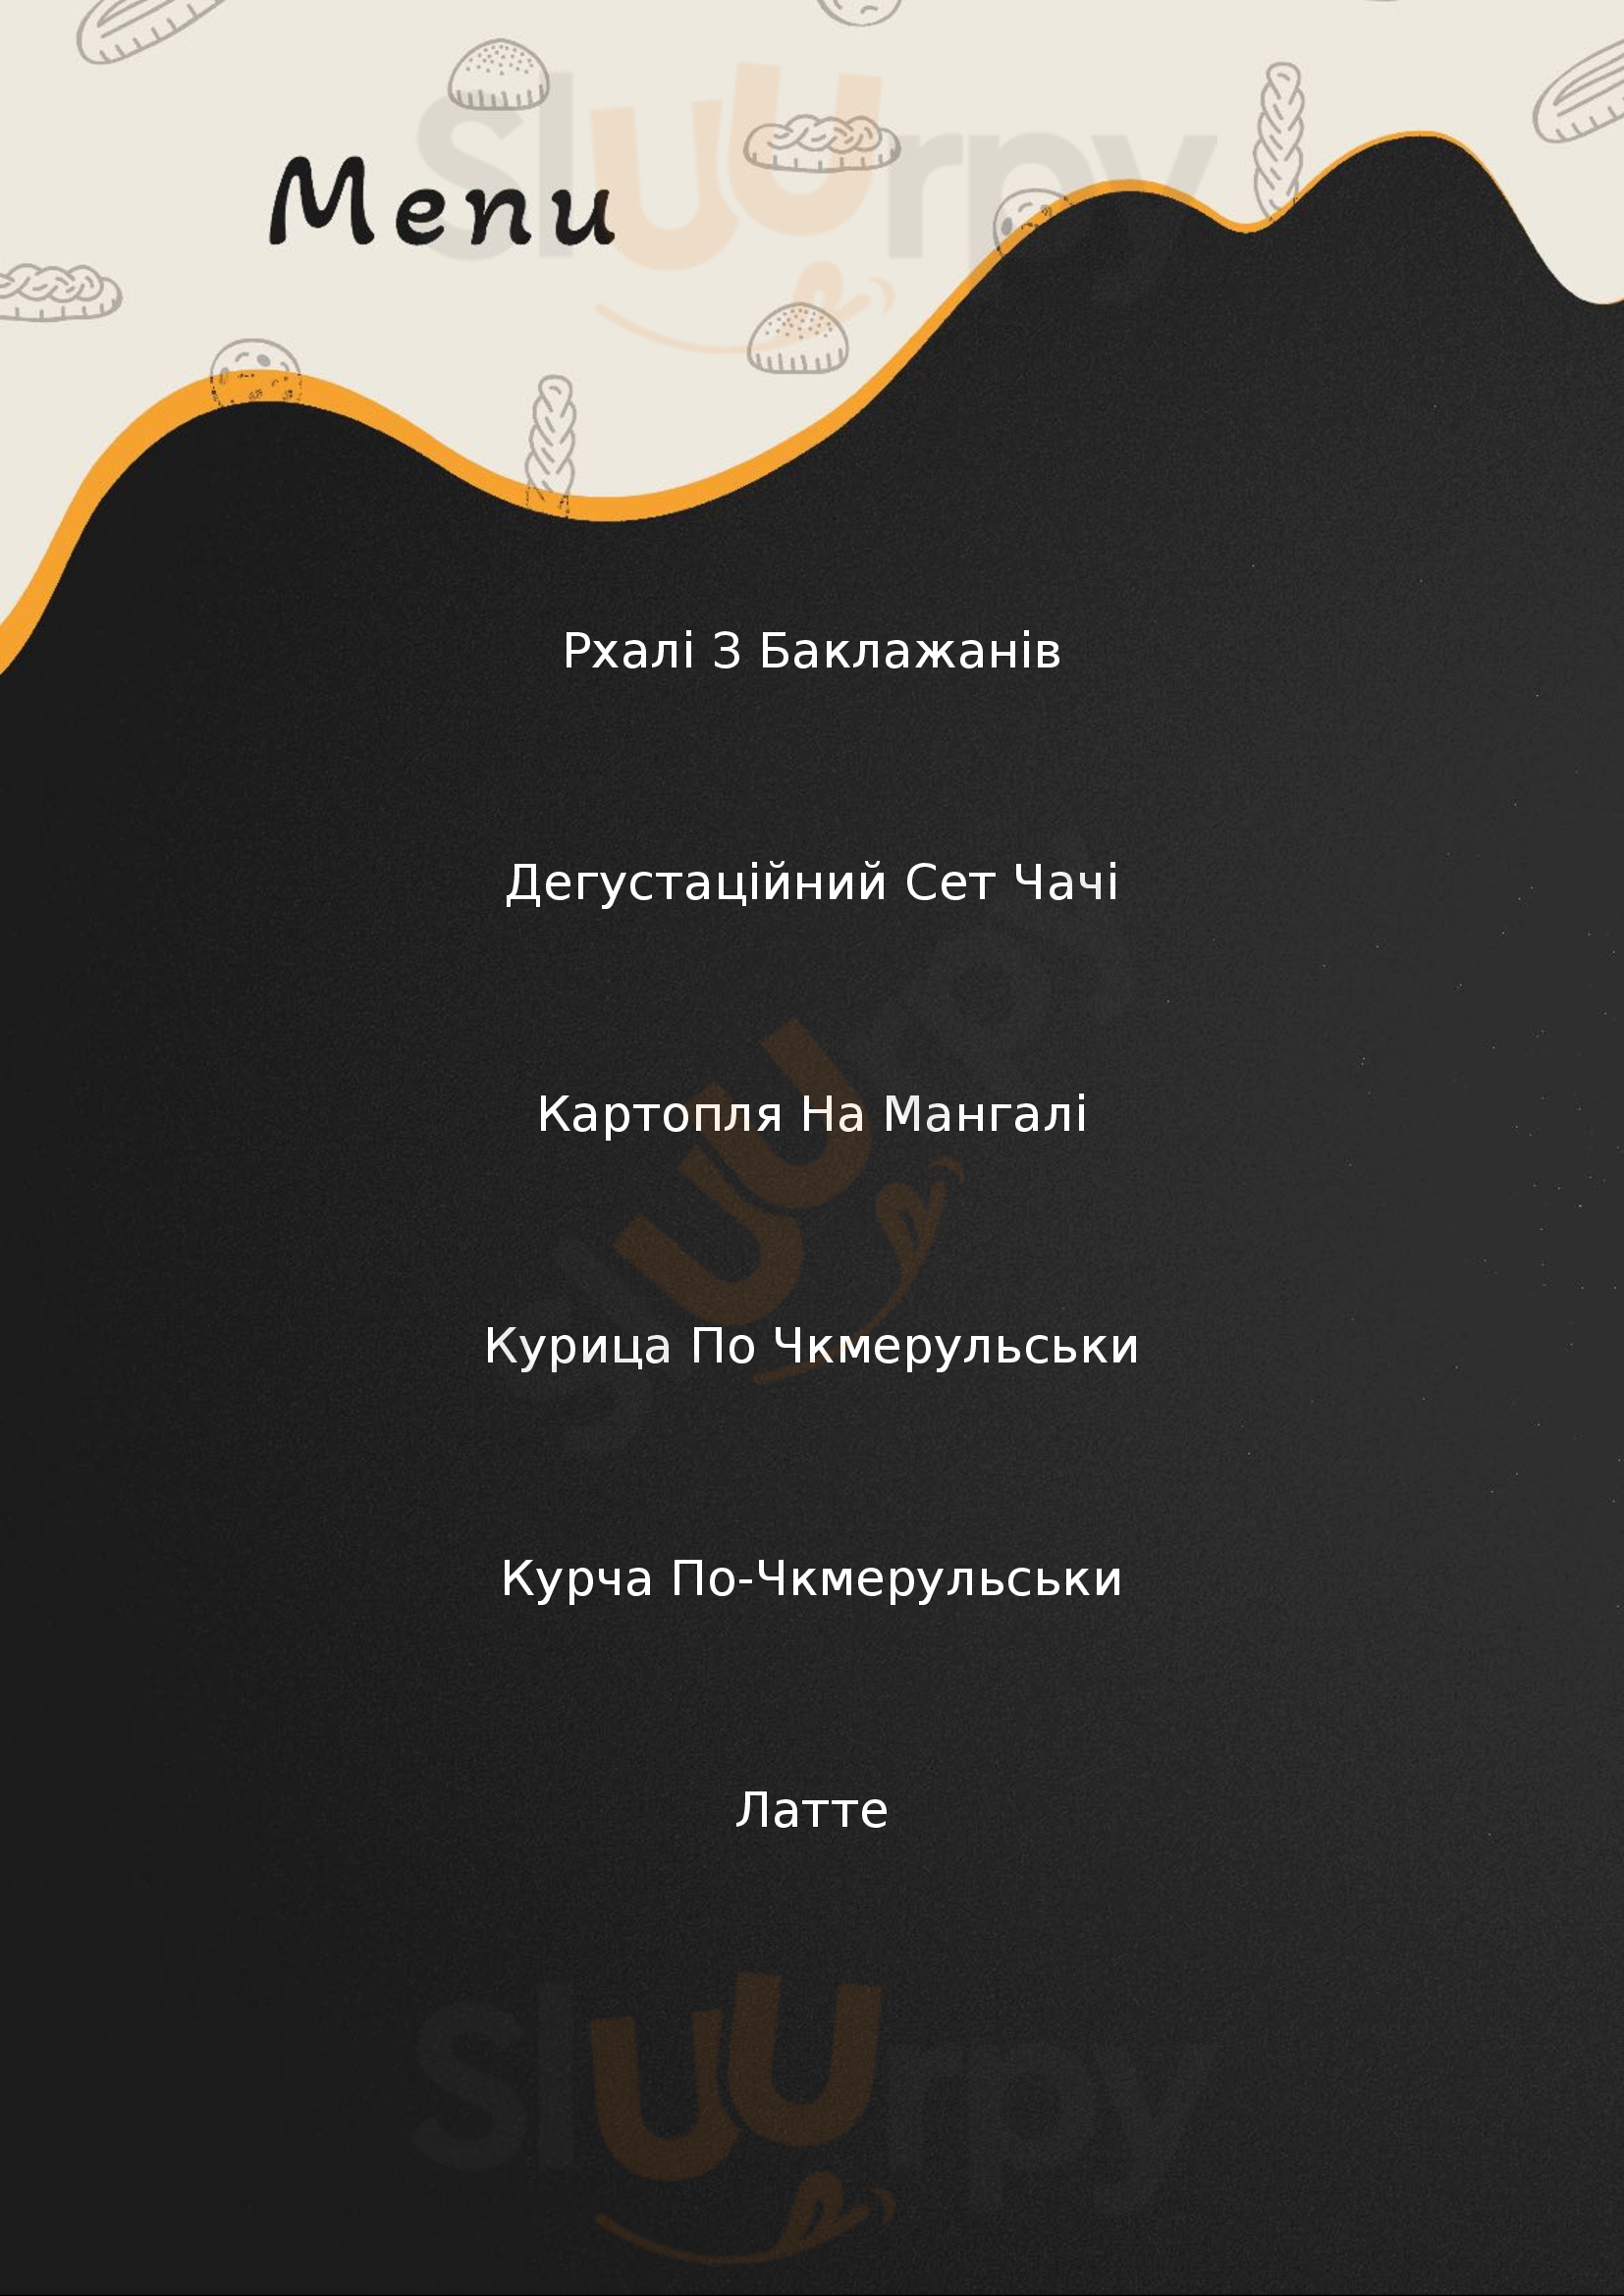 Khinkalnya Zaporizhzhya Menu - 1